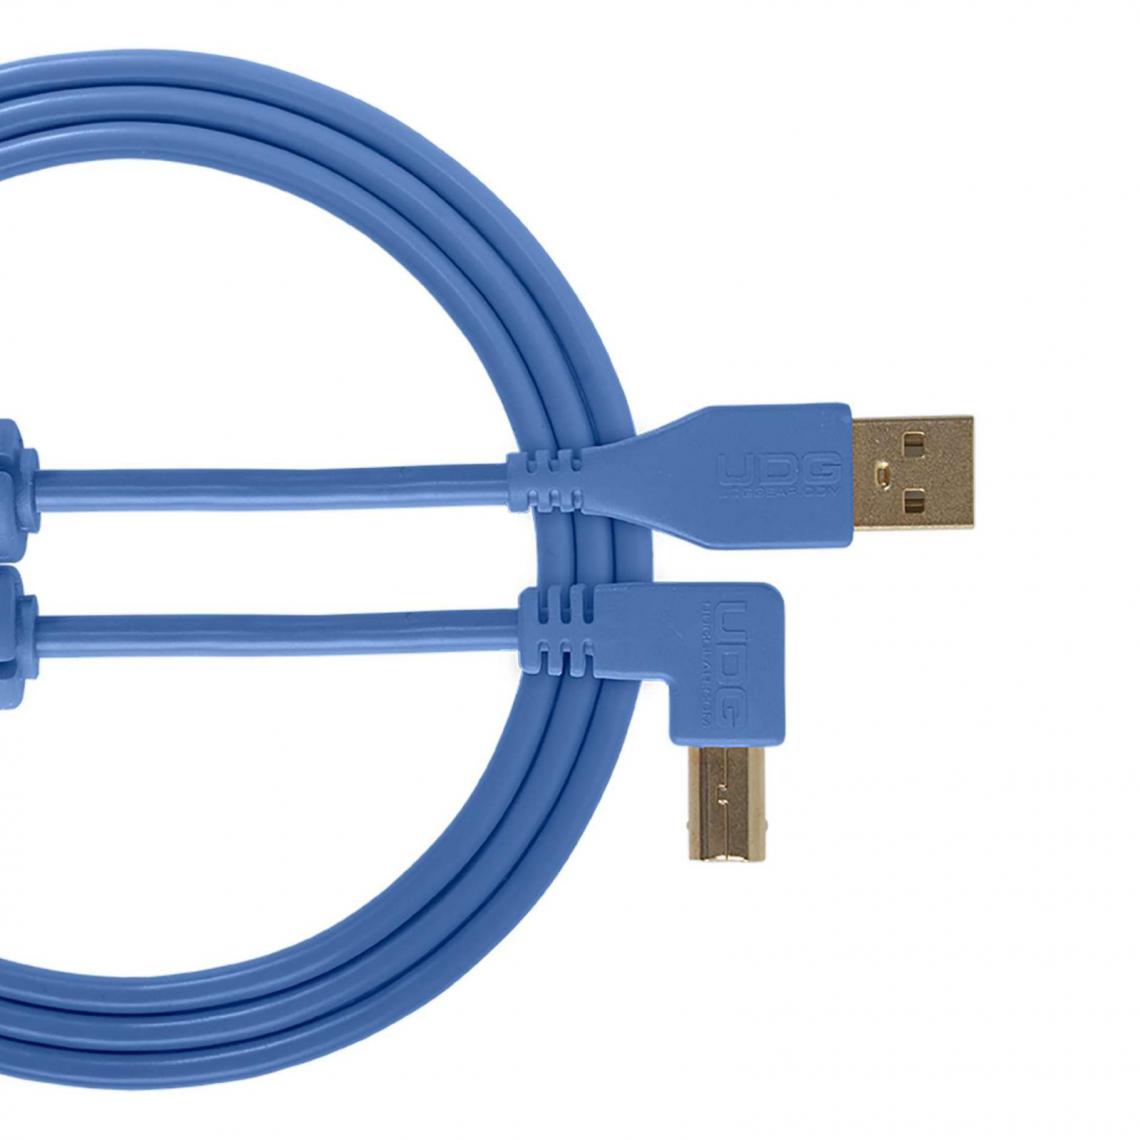 Udg - UDG U 95005 LB - Câble UDG USB 2.0 A-B Bleu Coudé 2m - Câble antenne